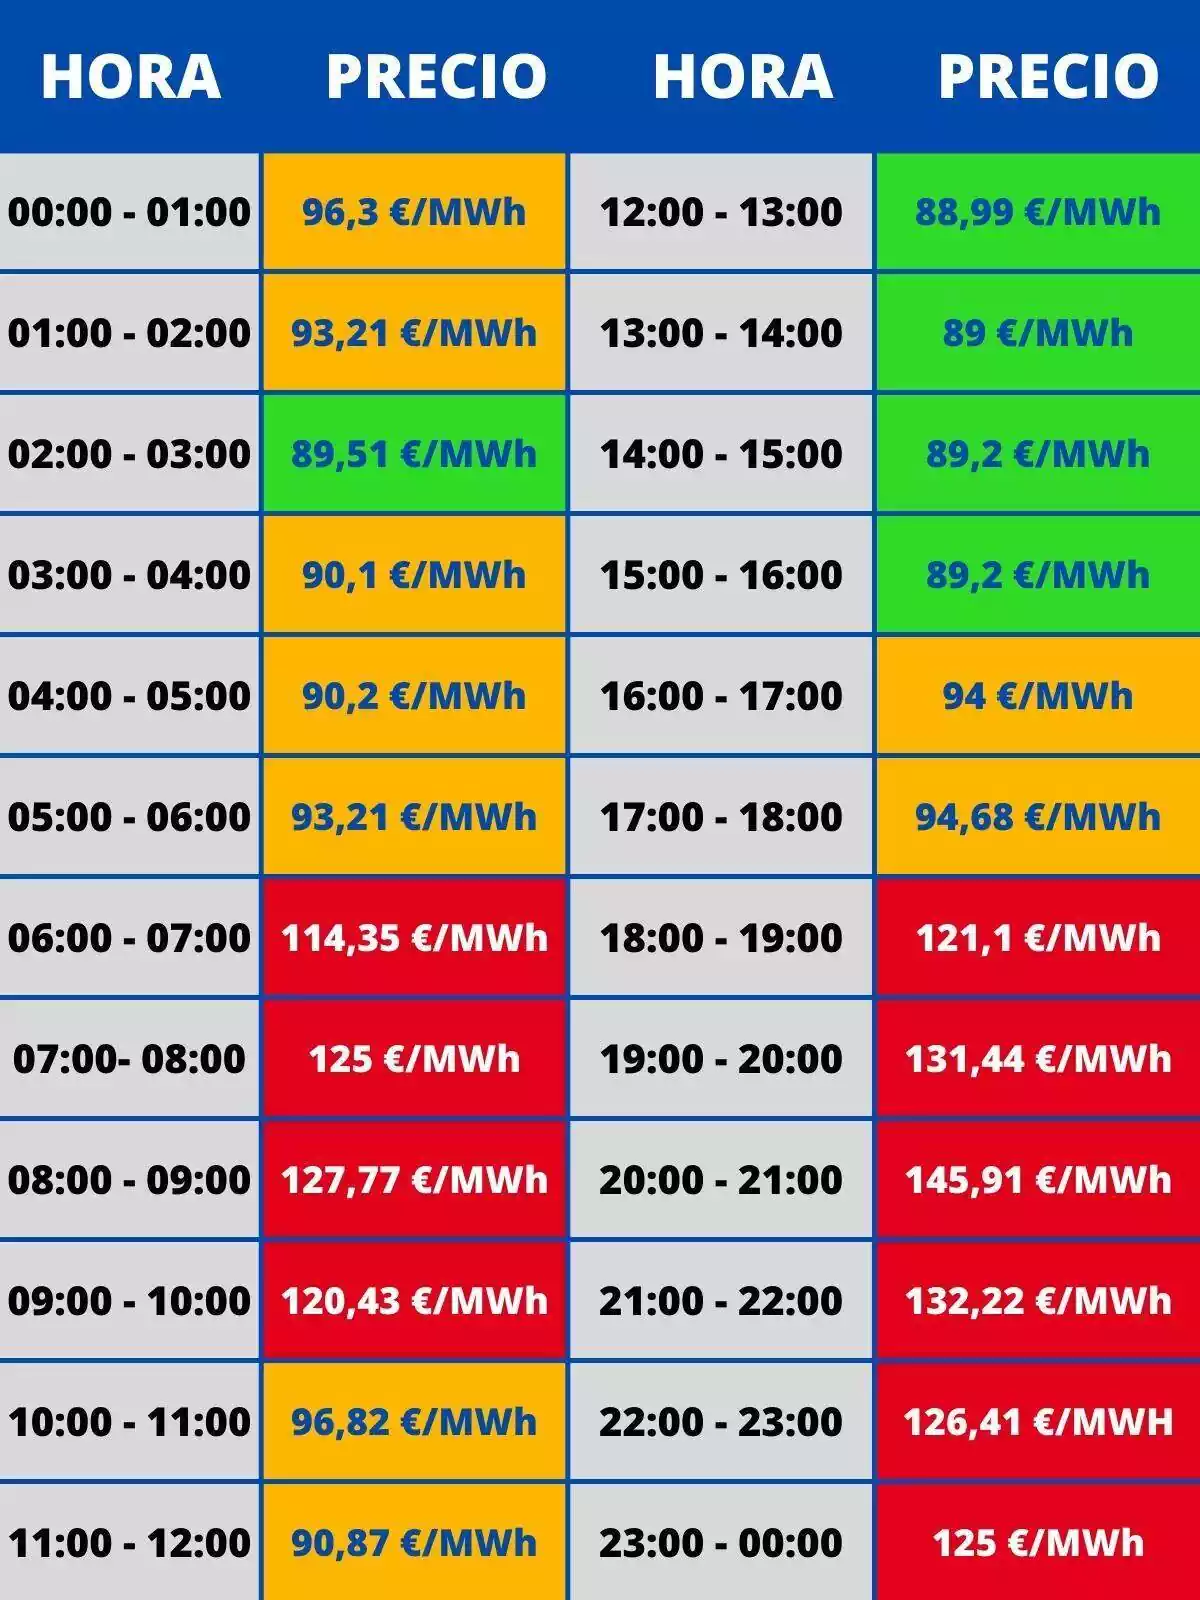 Tabla mostrando las horas del día y sus precios correspondientes